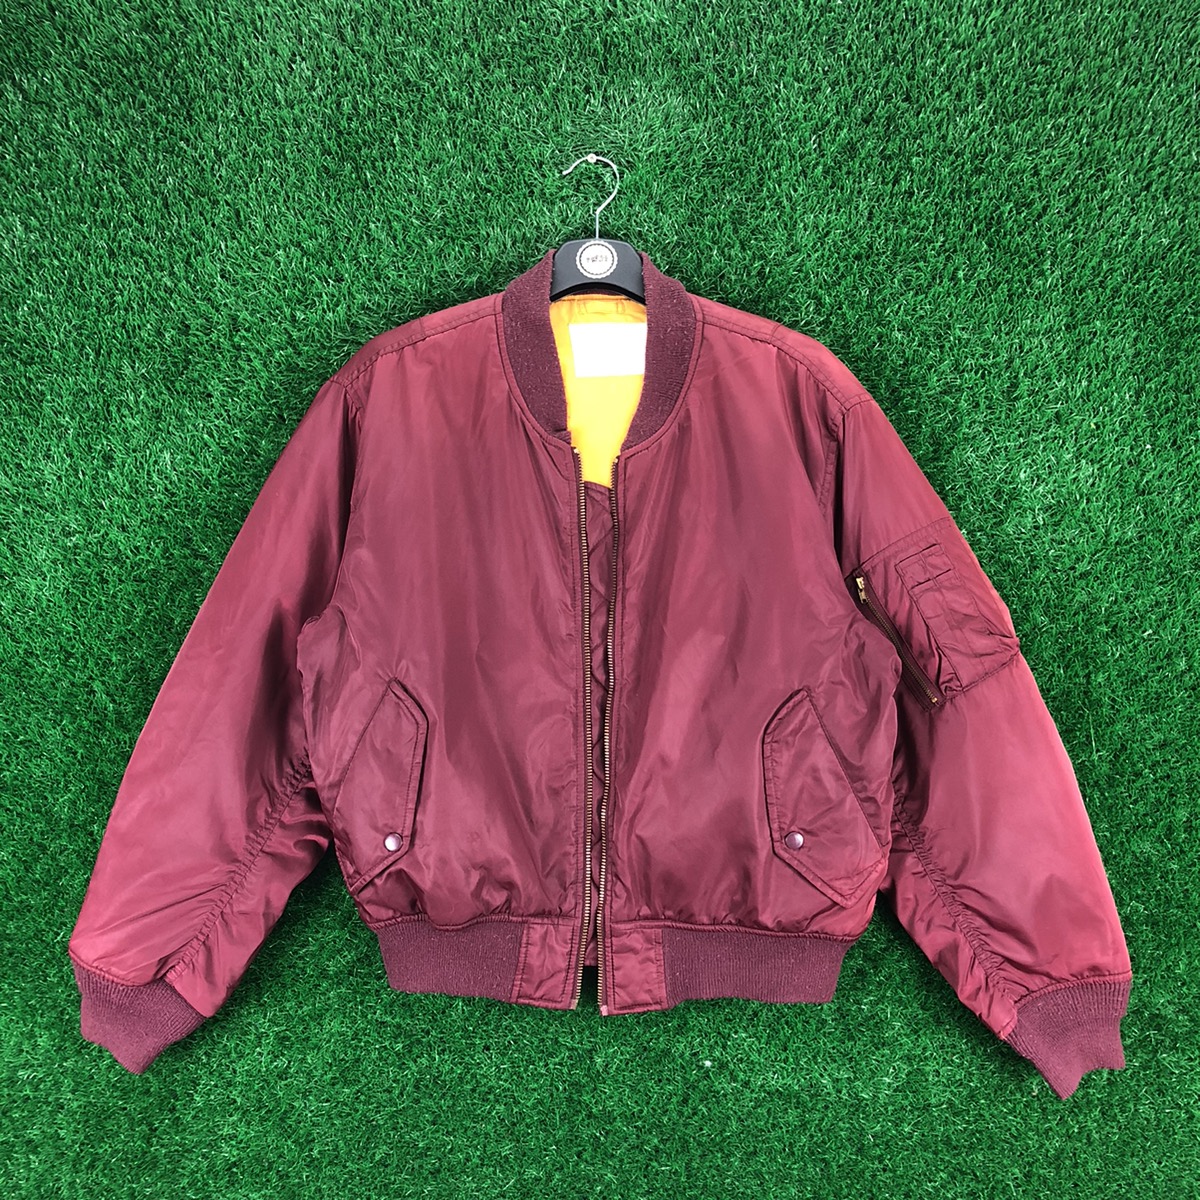 Vintage - Vintage 90's Bomber MA-1 Jacket Cherry Red Color Japan Brand - 1